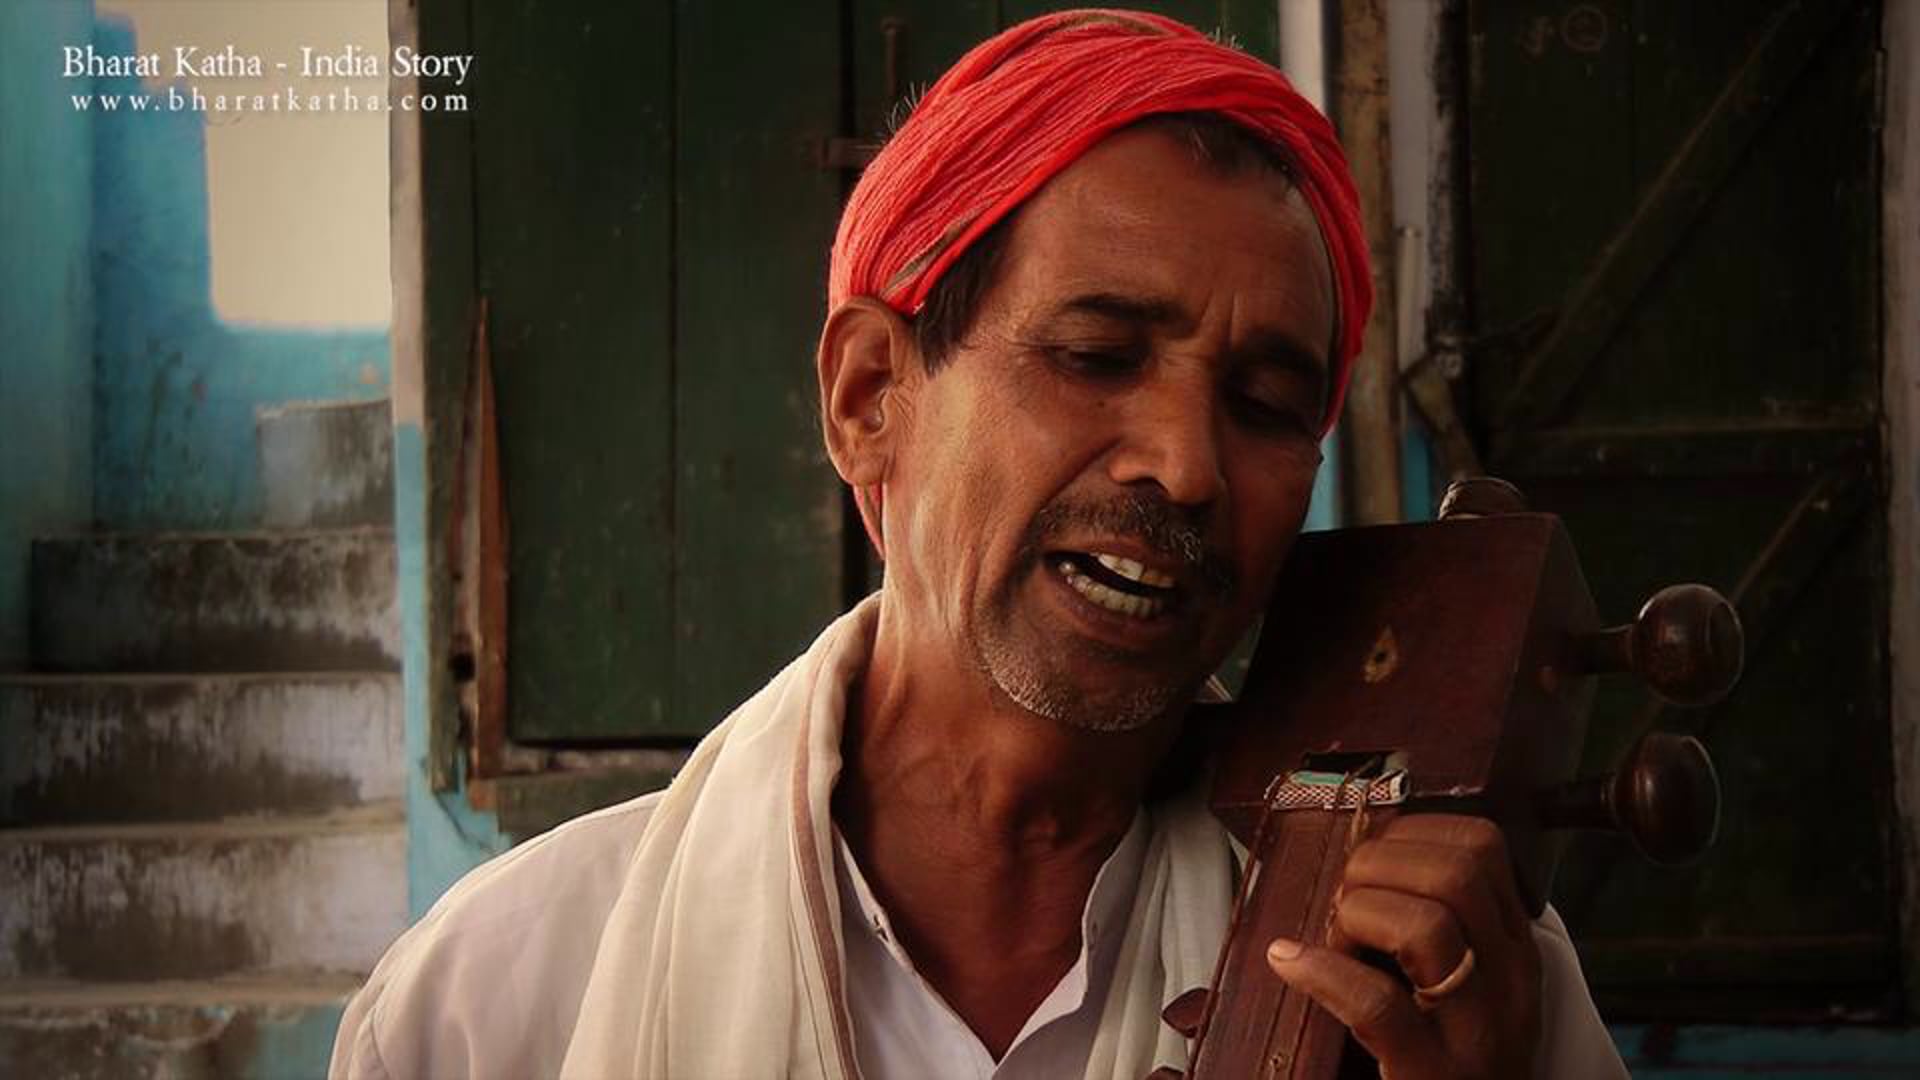 Attar Singh, a folk singer from Shamli village